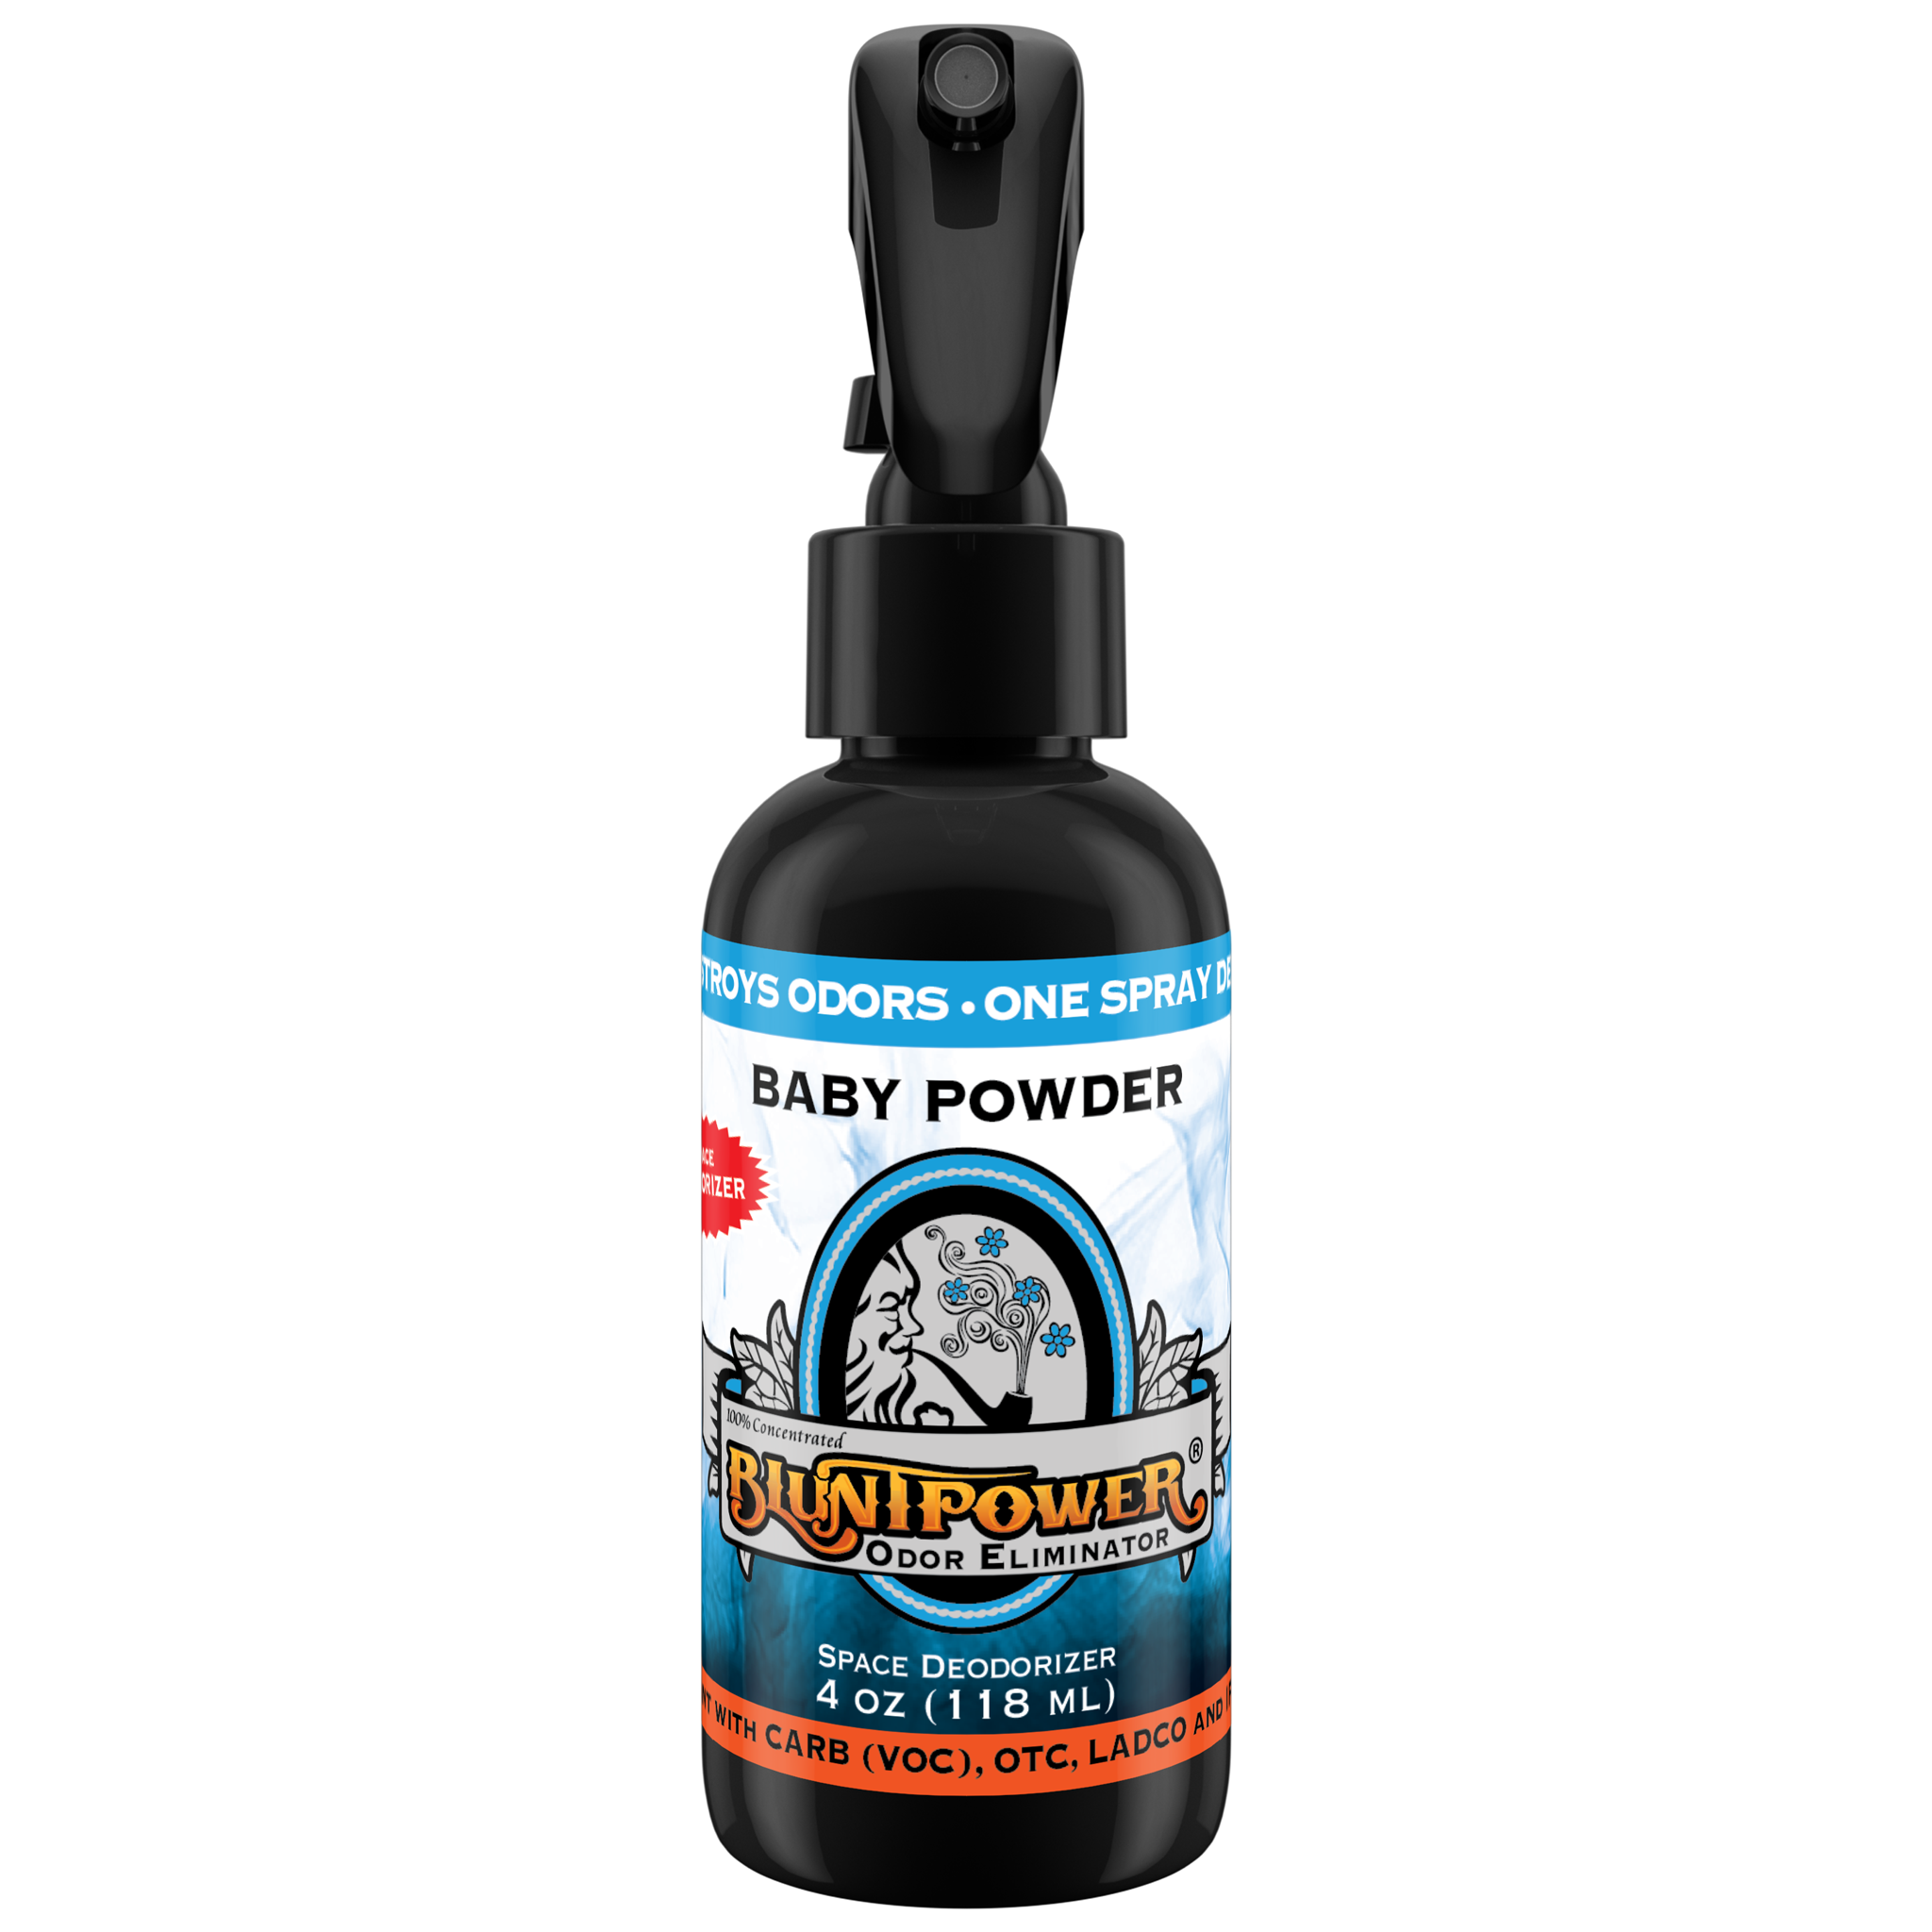 BluntPower Odor Eliminator - Baby Powder Scent Size: 4 fl oz